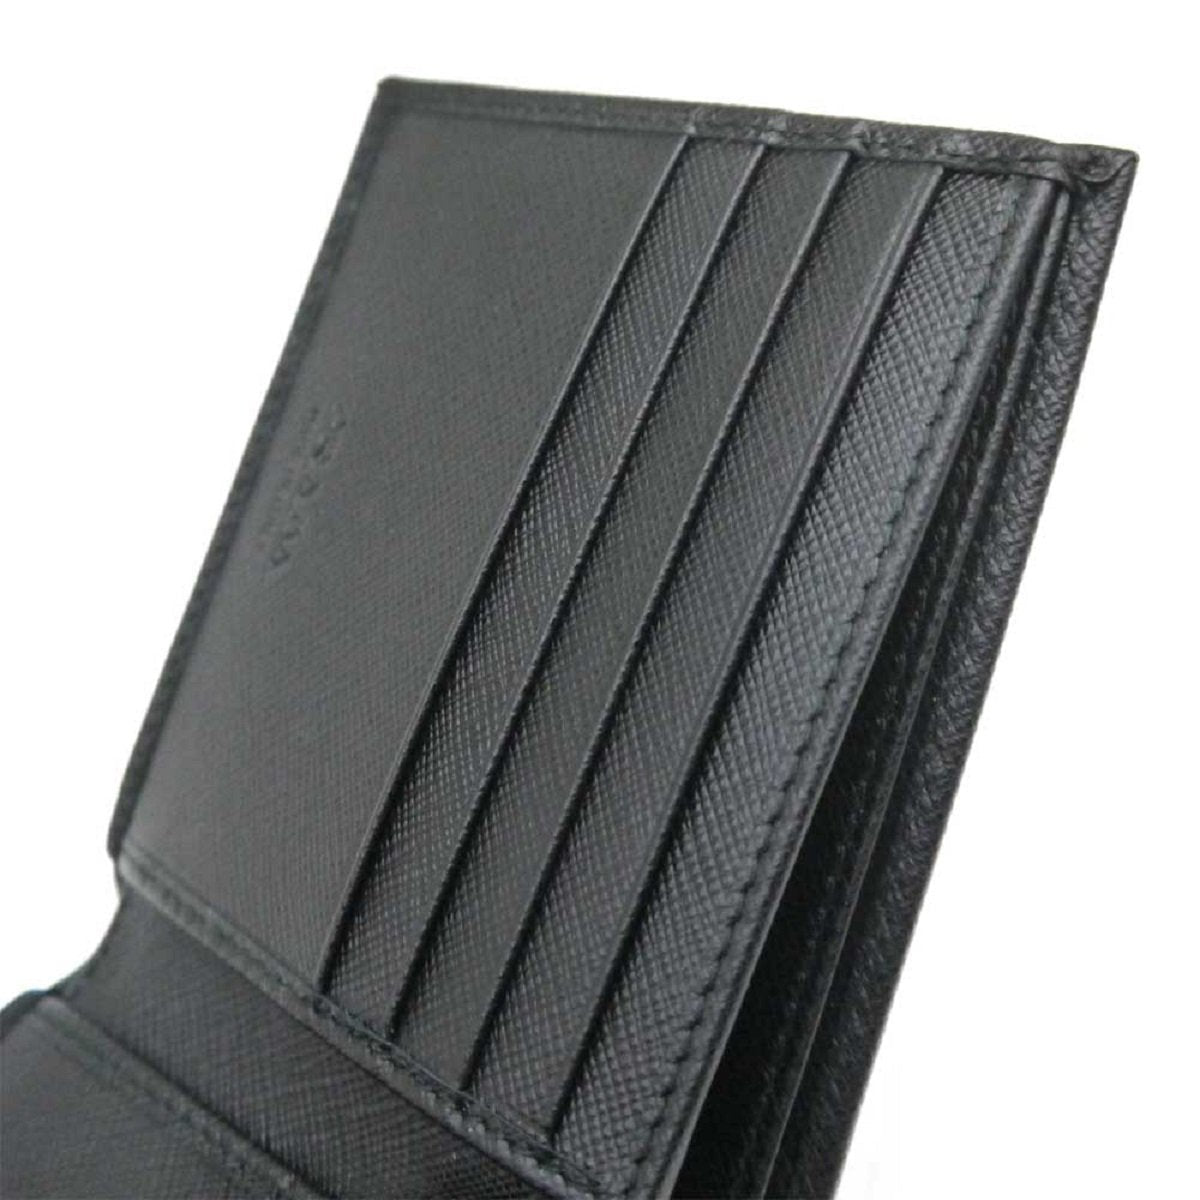 Prada Men's Nero Black Saffiano Leather Logo Billfold Bifold Wallet - LUXURYMRKT